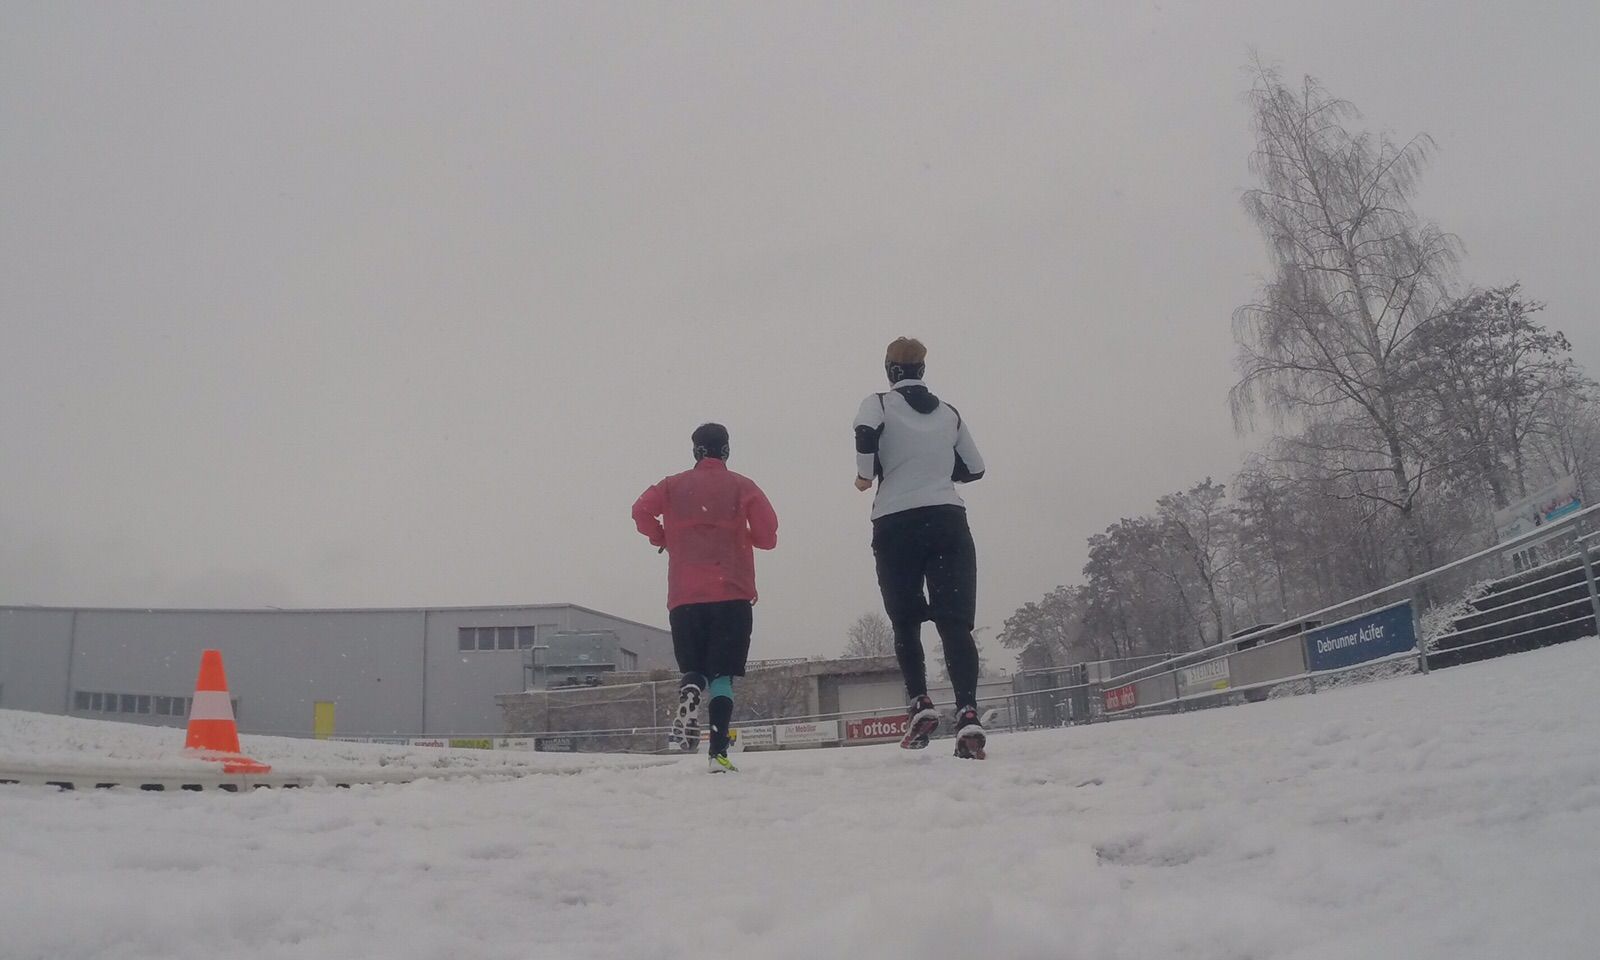 Bild vonLäuferinnen im Schnee beim Training im Winter